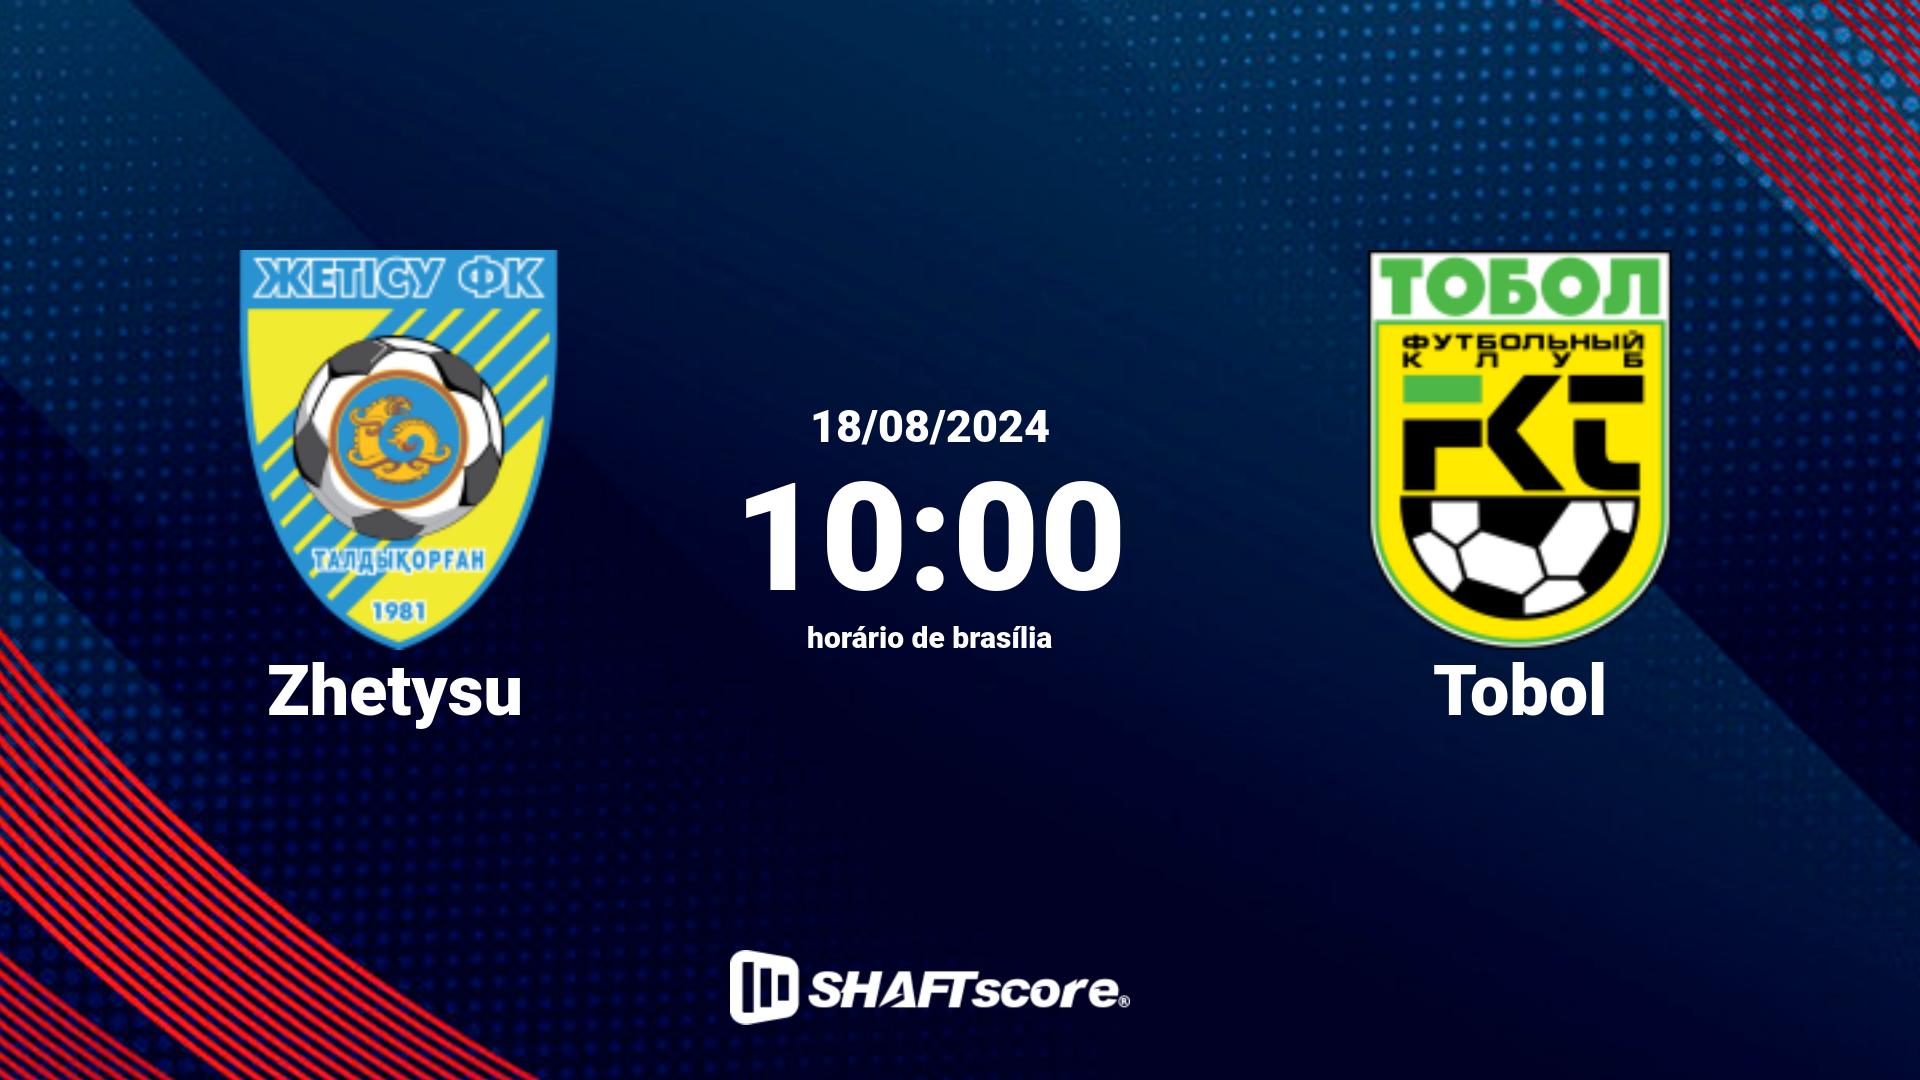 Estatísticas do jogo Zhetysu vs Tobol 18.08 10:00